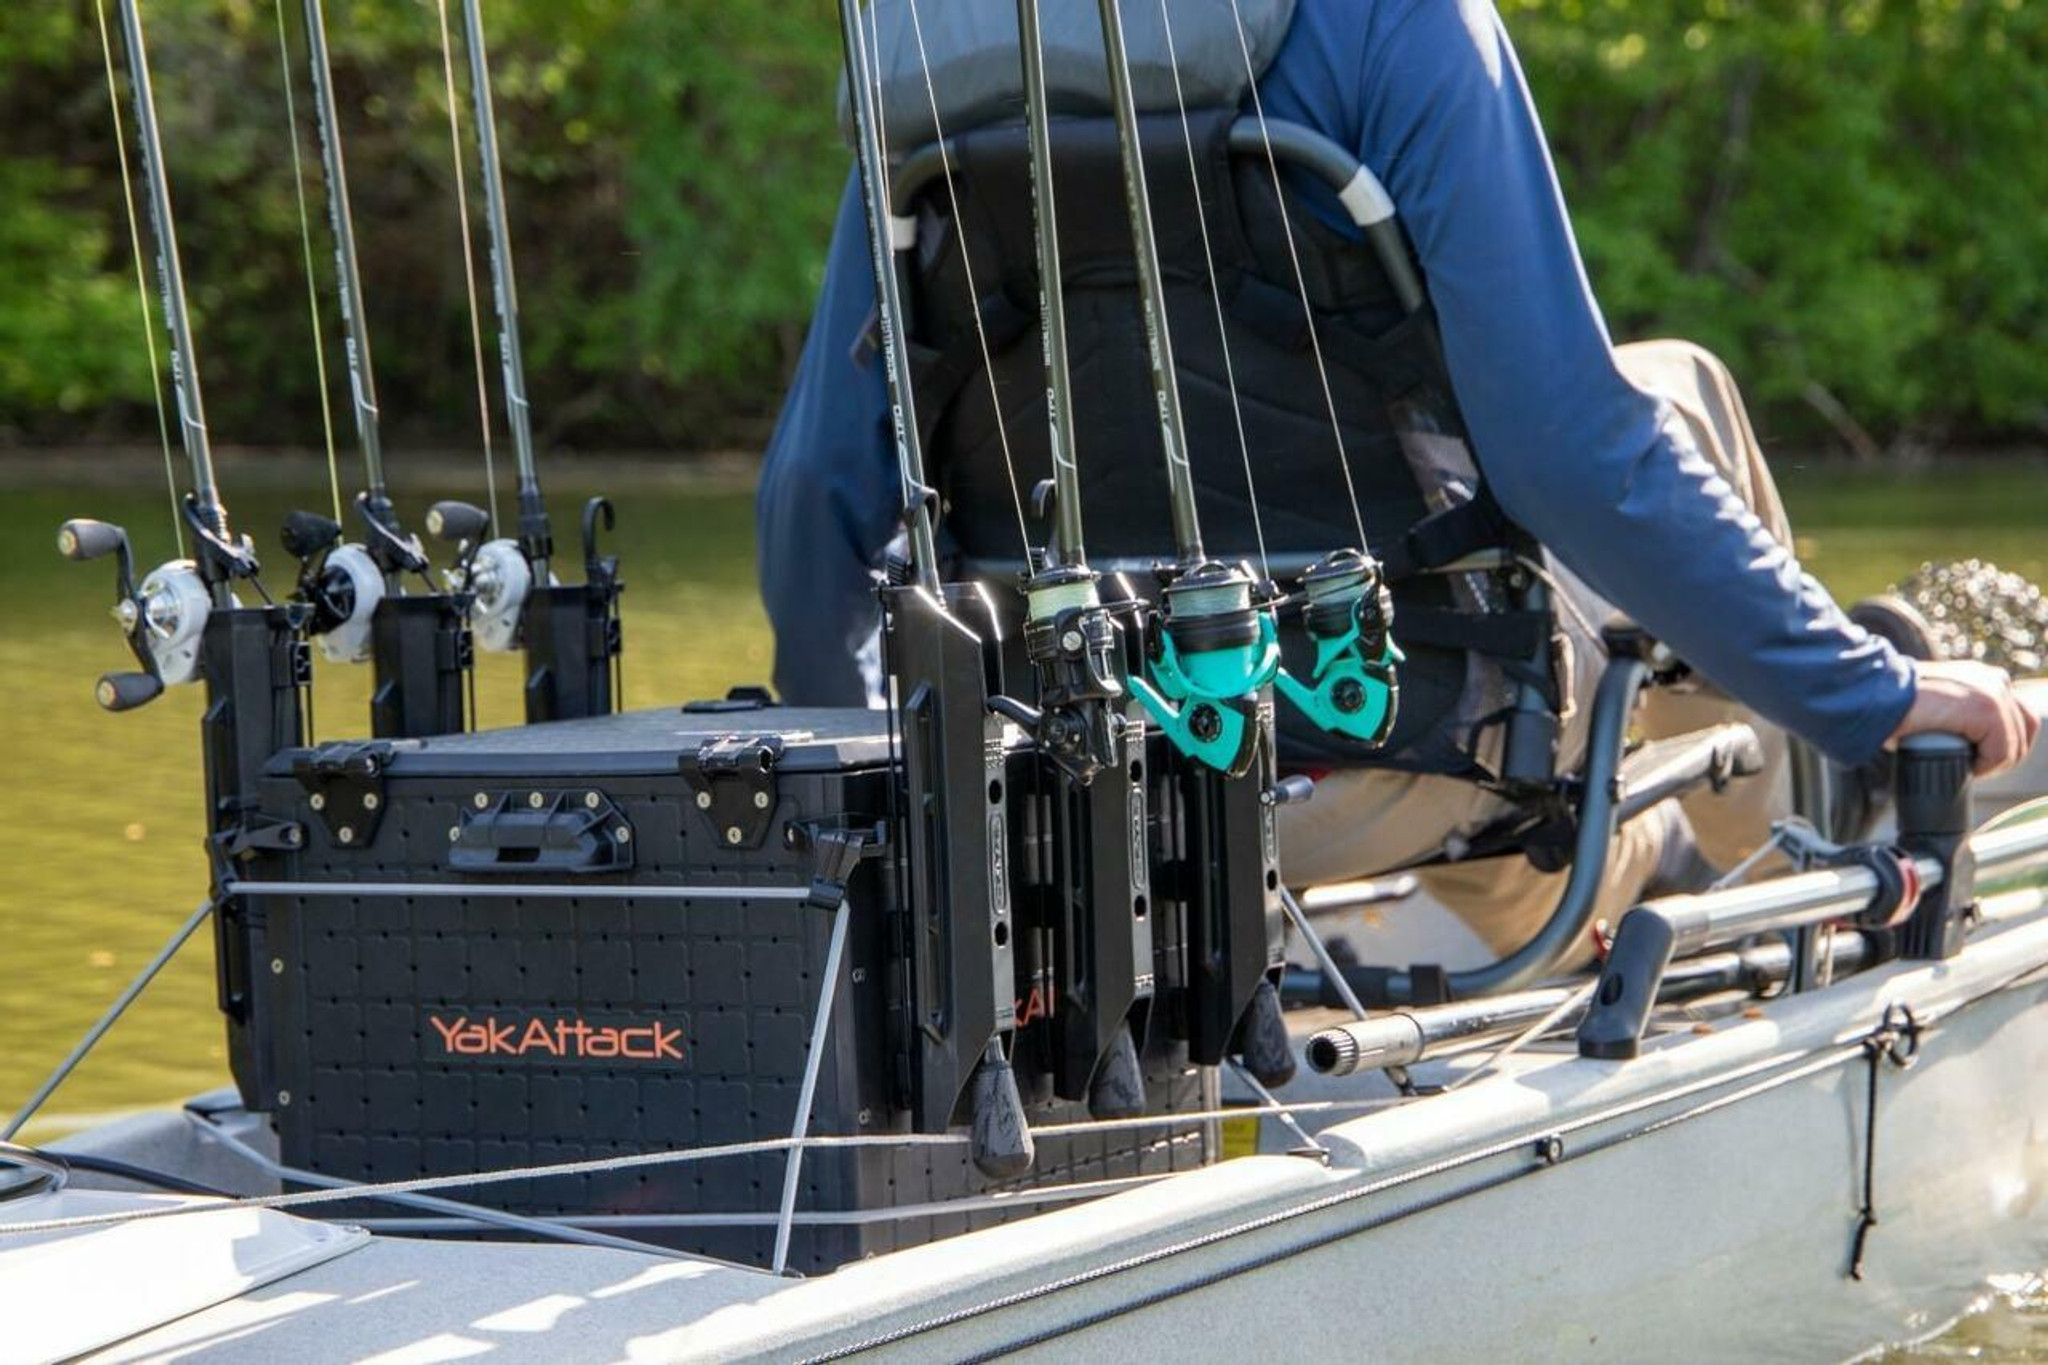 YakAttack BlackPak Pro Kayak Fishing Crate (13x16) 819731015449